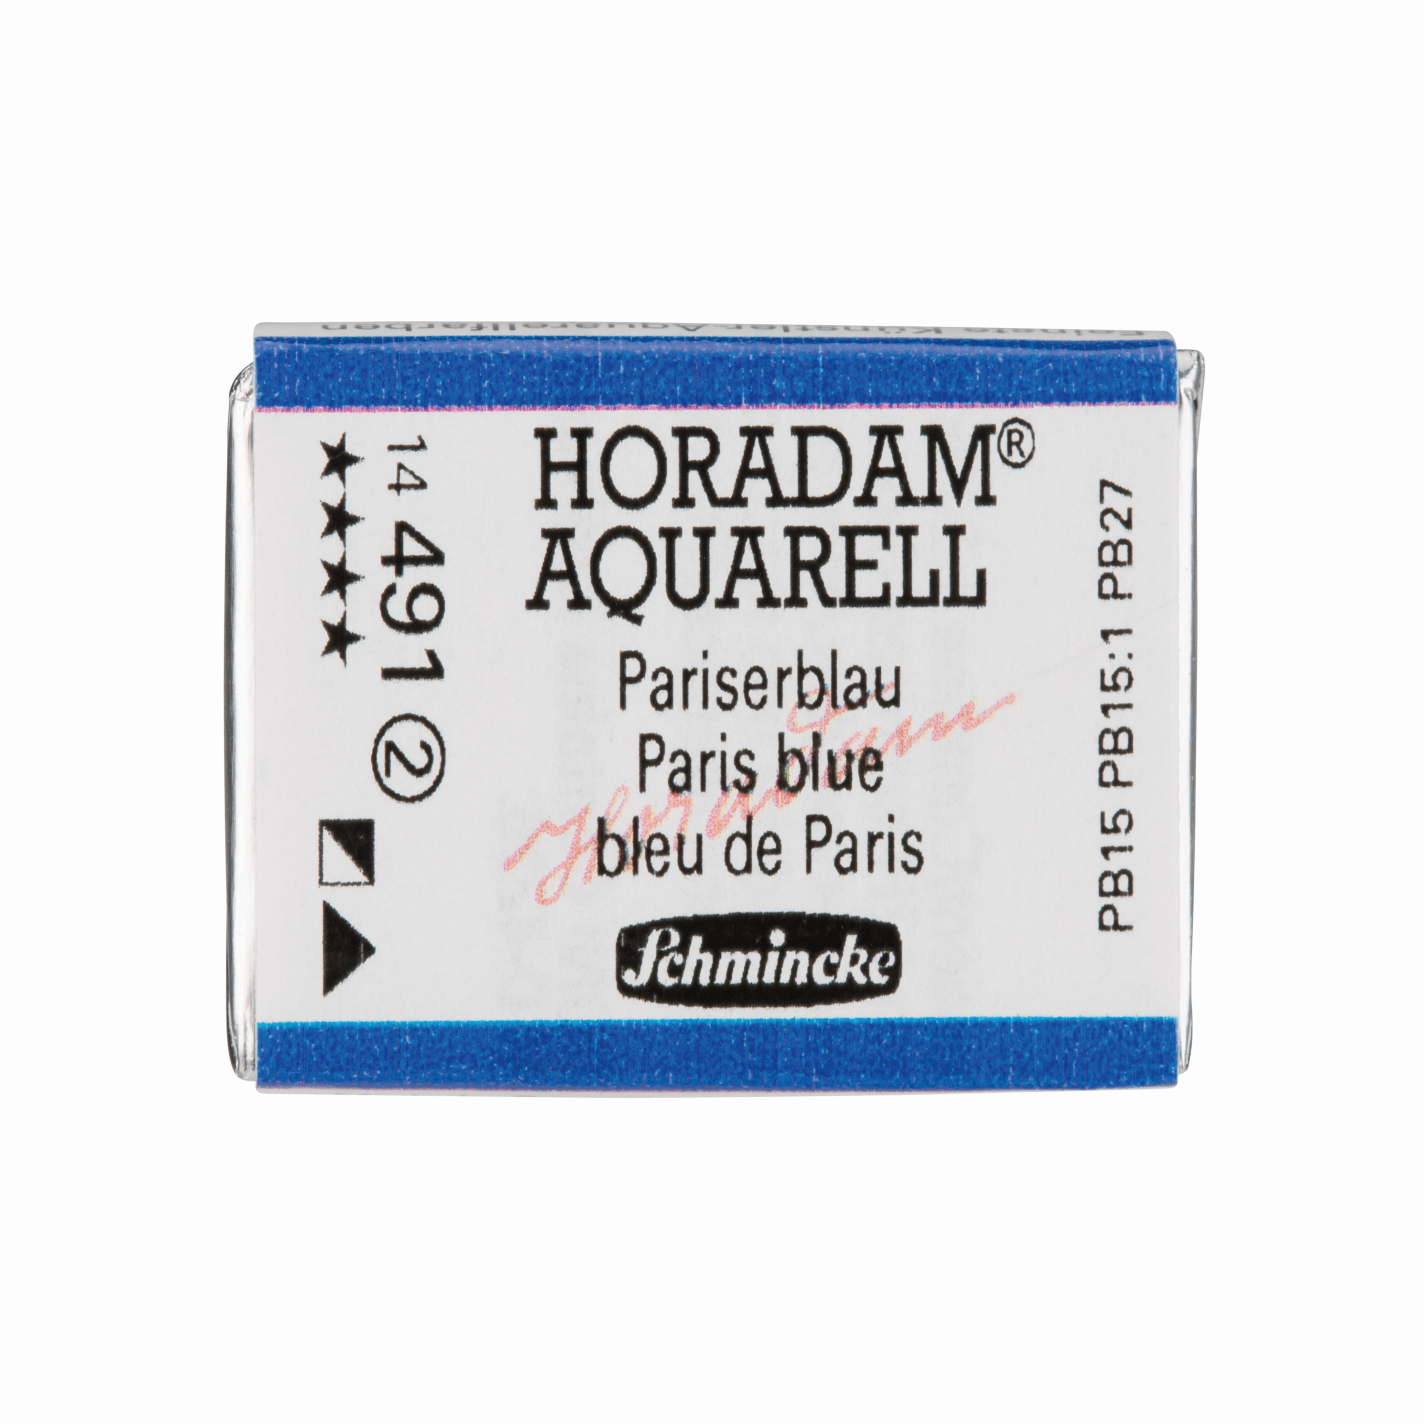 Schmincke Horadam Aquarell pans 1/1 pan Paris Blue